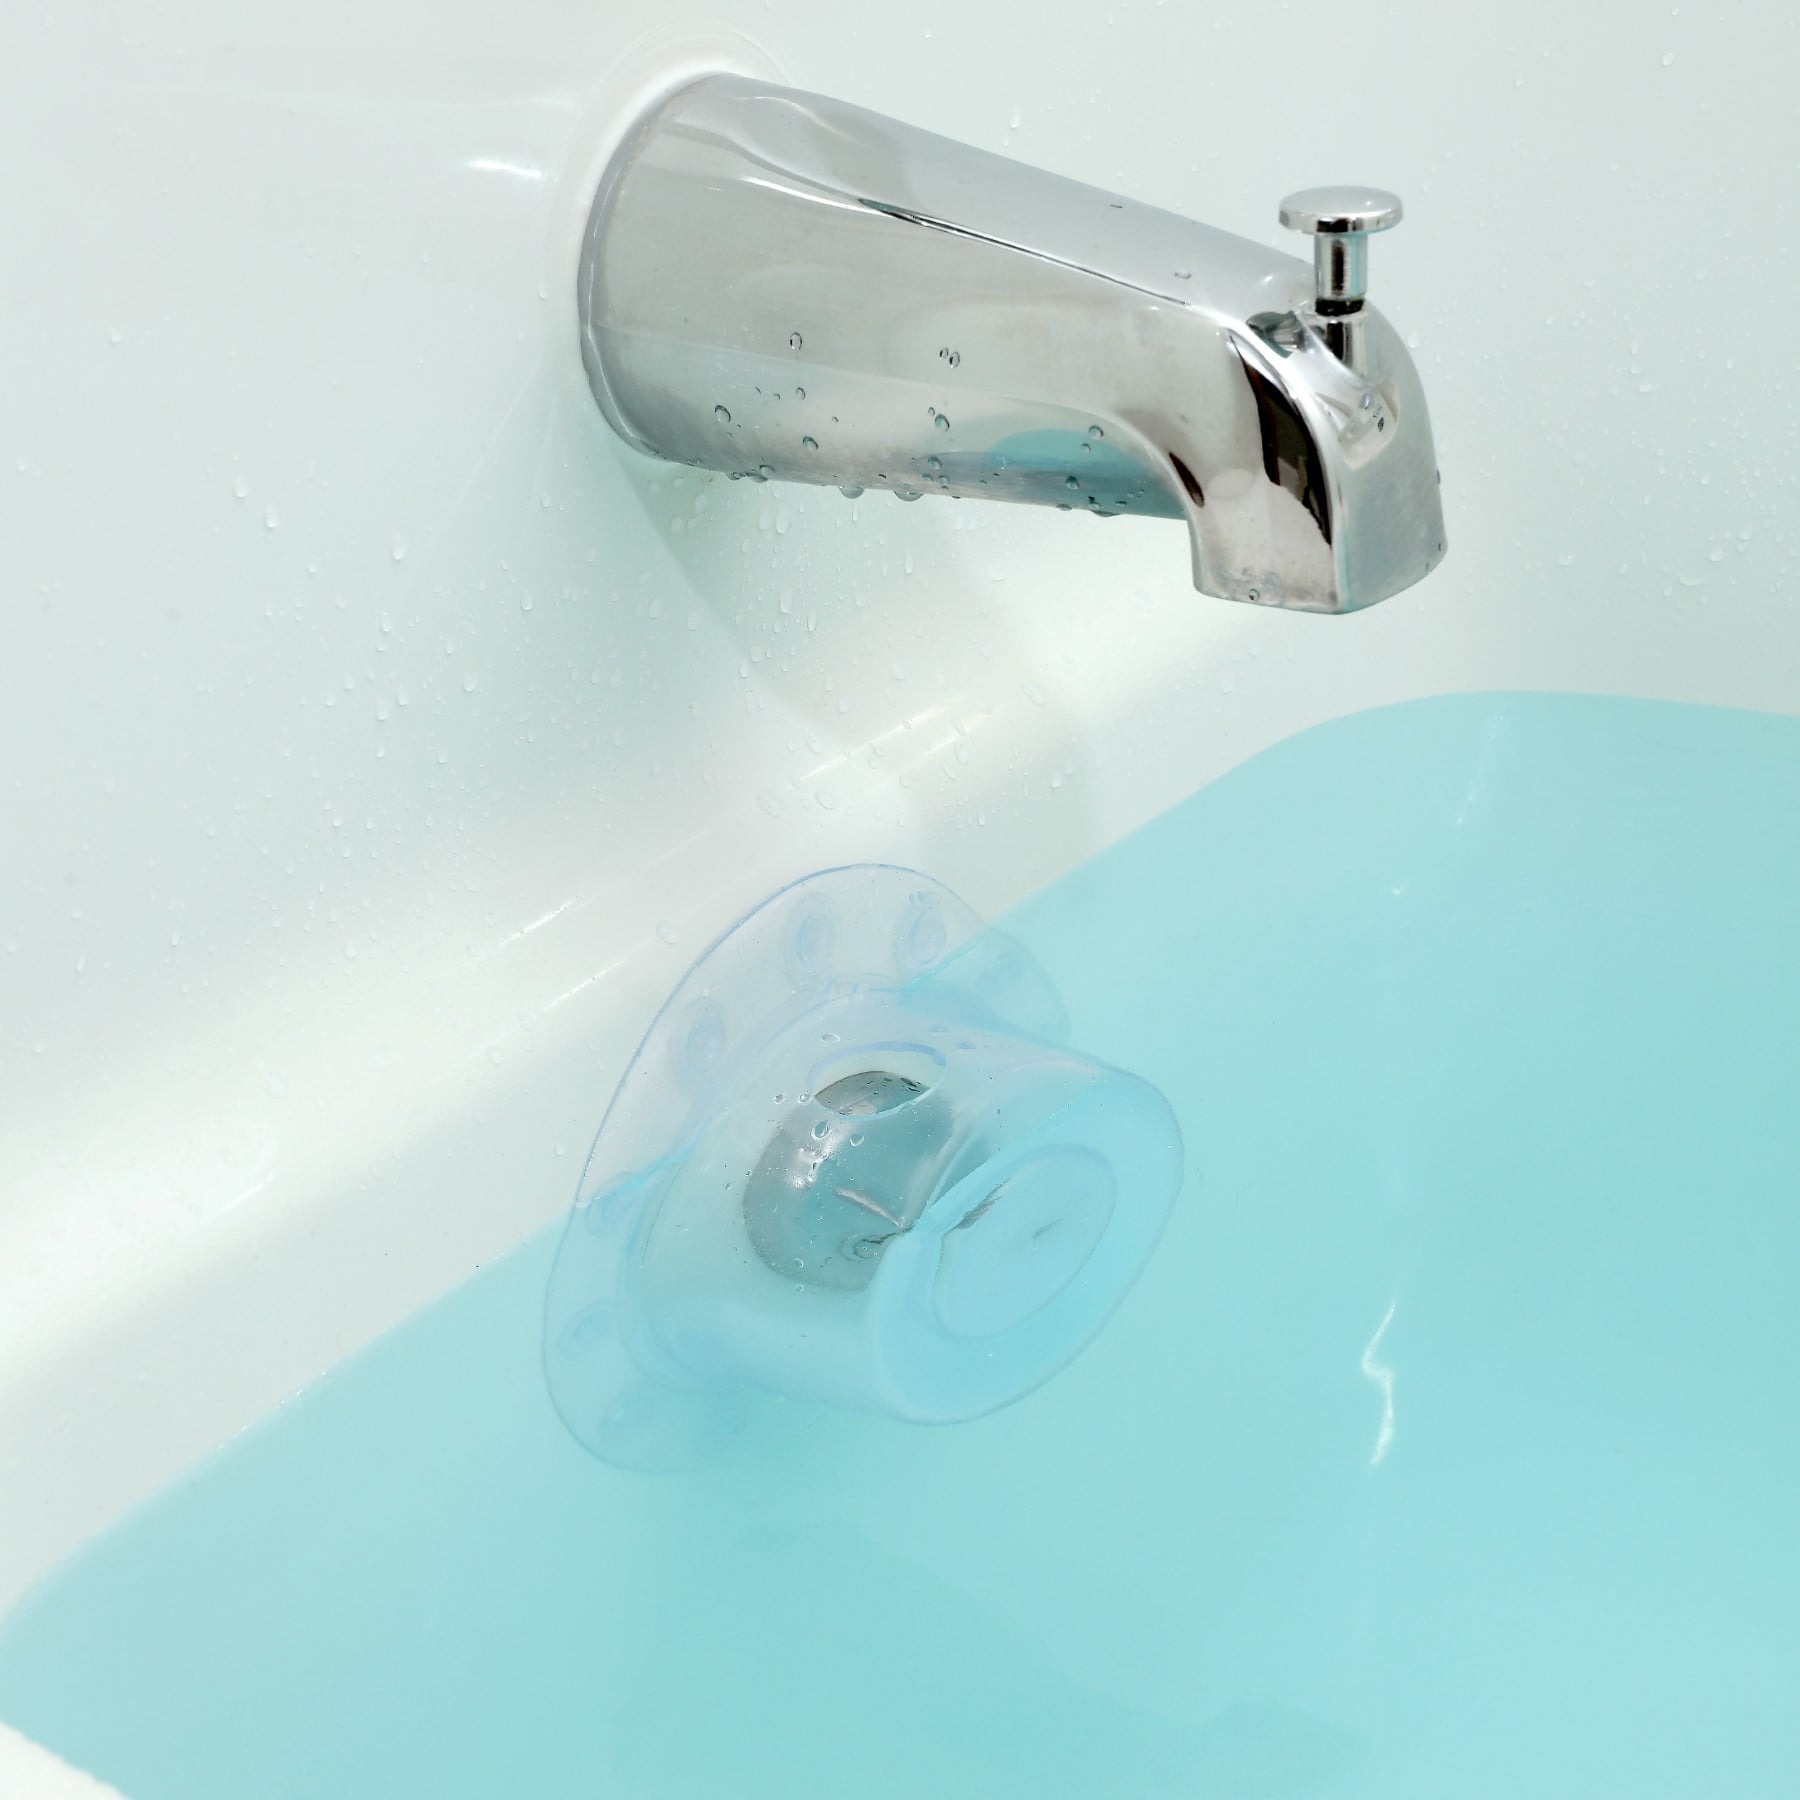 Better Soak Bathtub Overflow Drain Cover - Slipx Solutions : Target